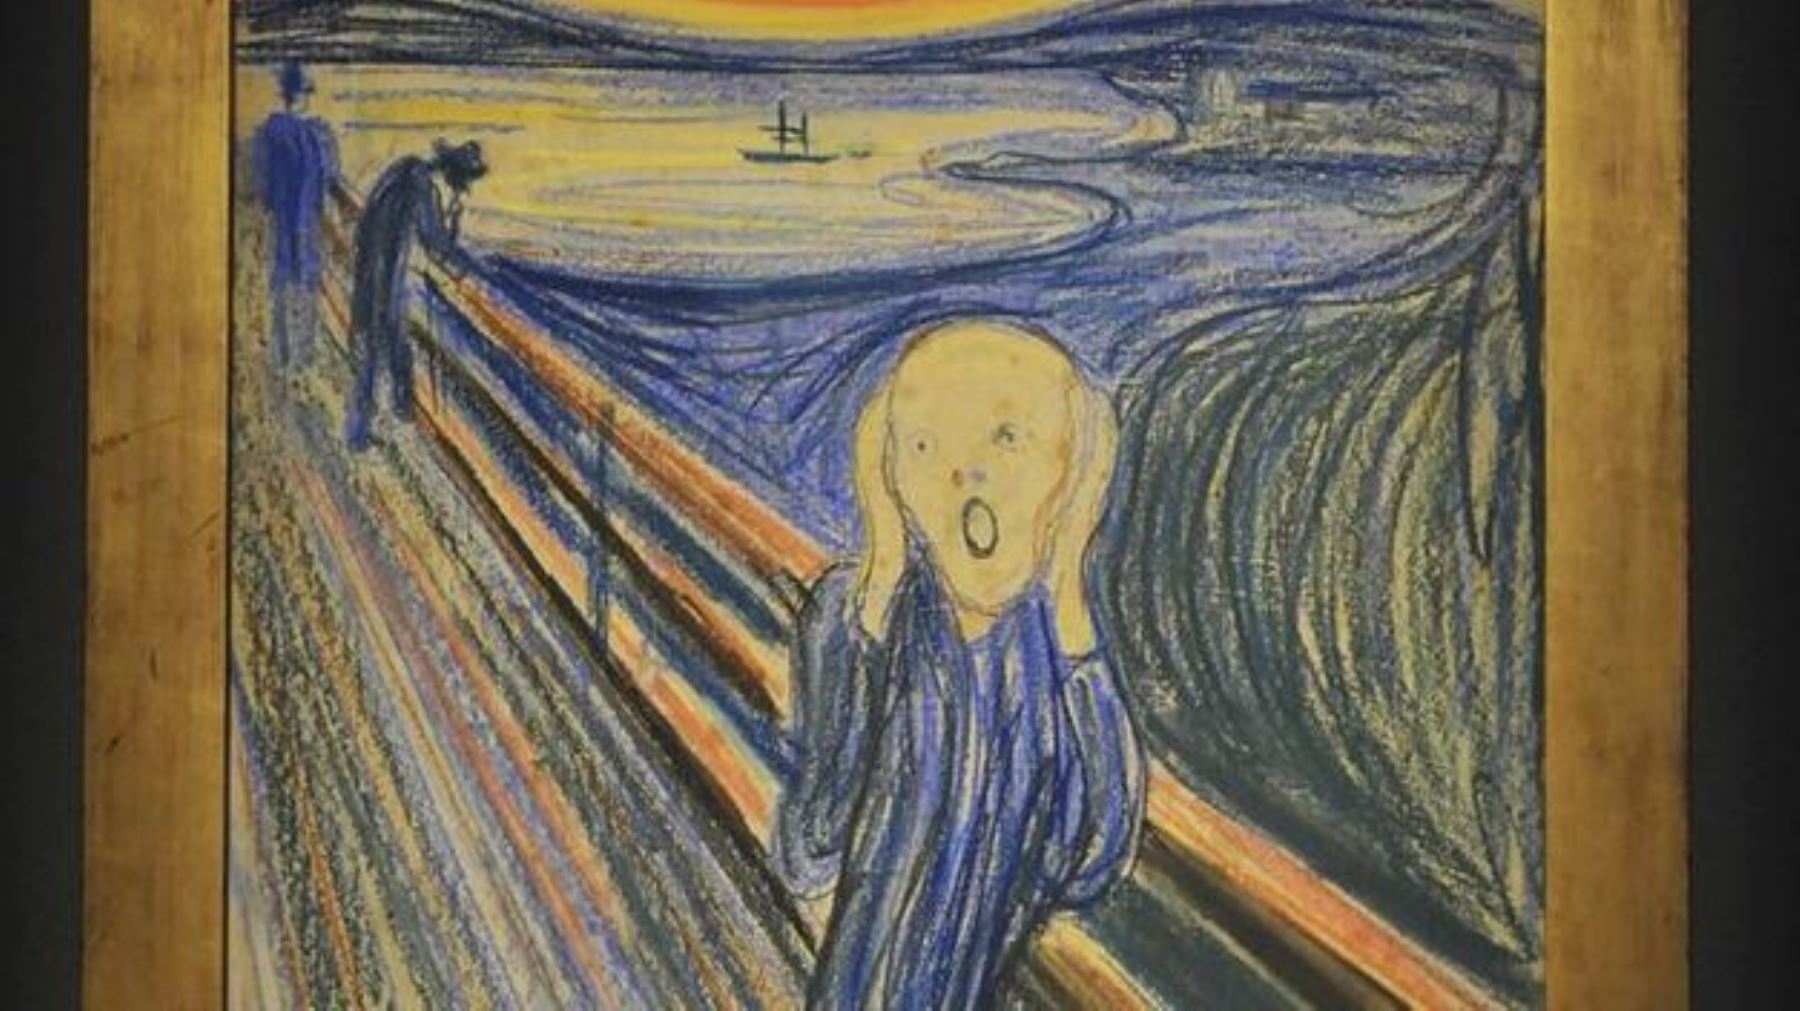 5- Edvard Munch, "El grito", vendido por 119,92 millones de dólares el 2 de mayo de 2012 en Sotheby